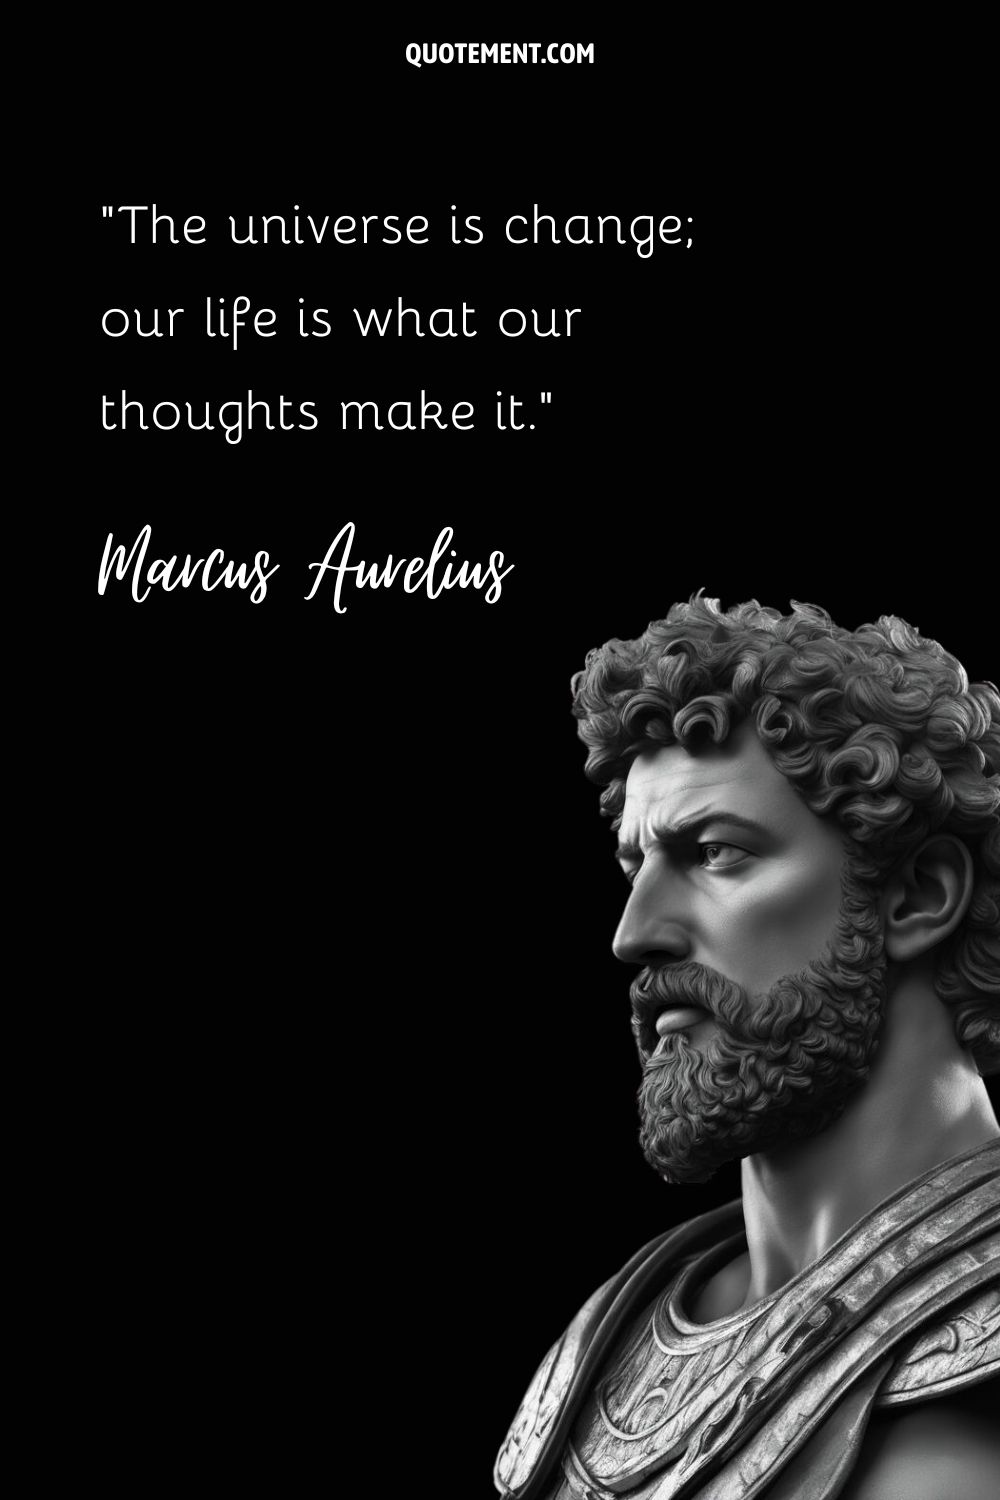 La mente filosófica revelada en la escultura intemporal de Marco Aurelio.